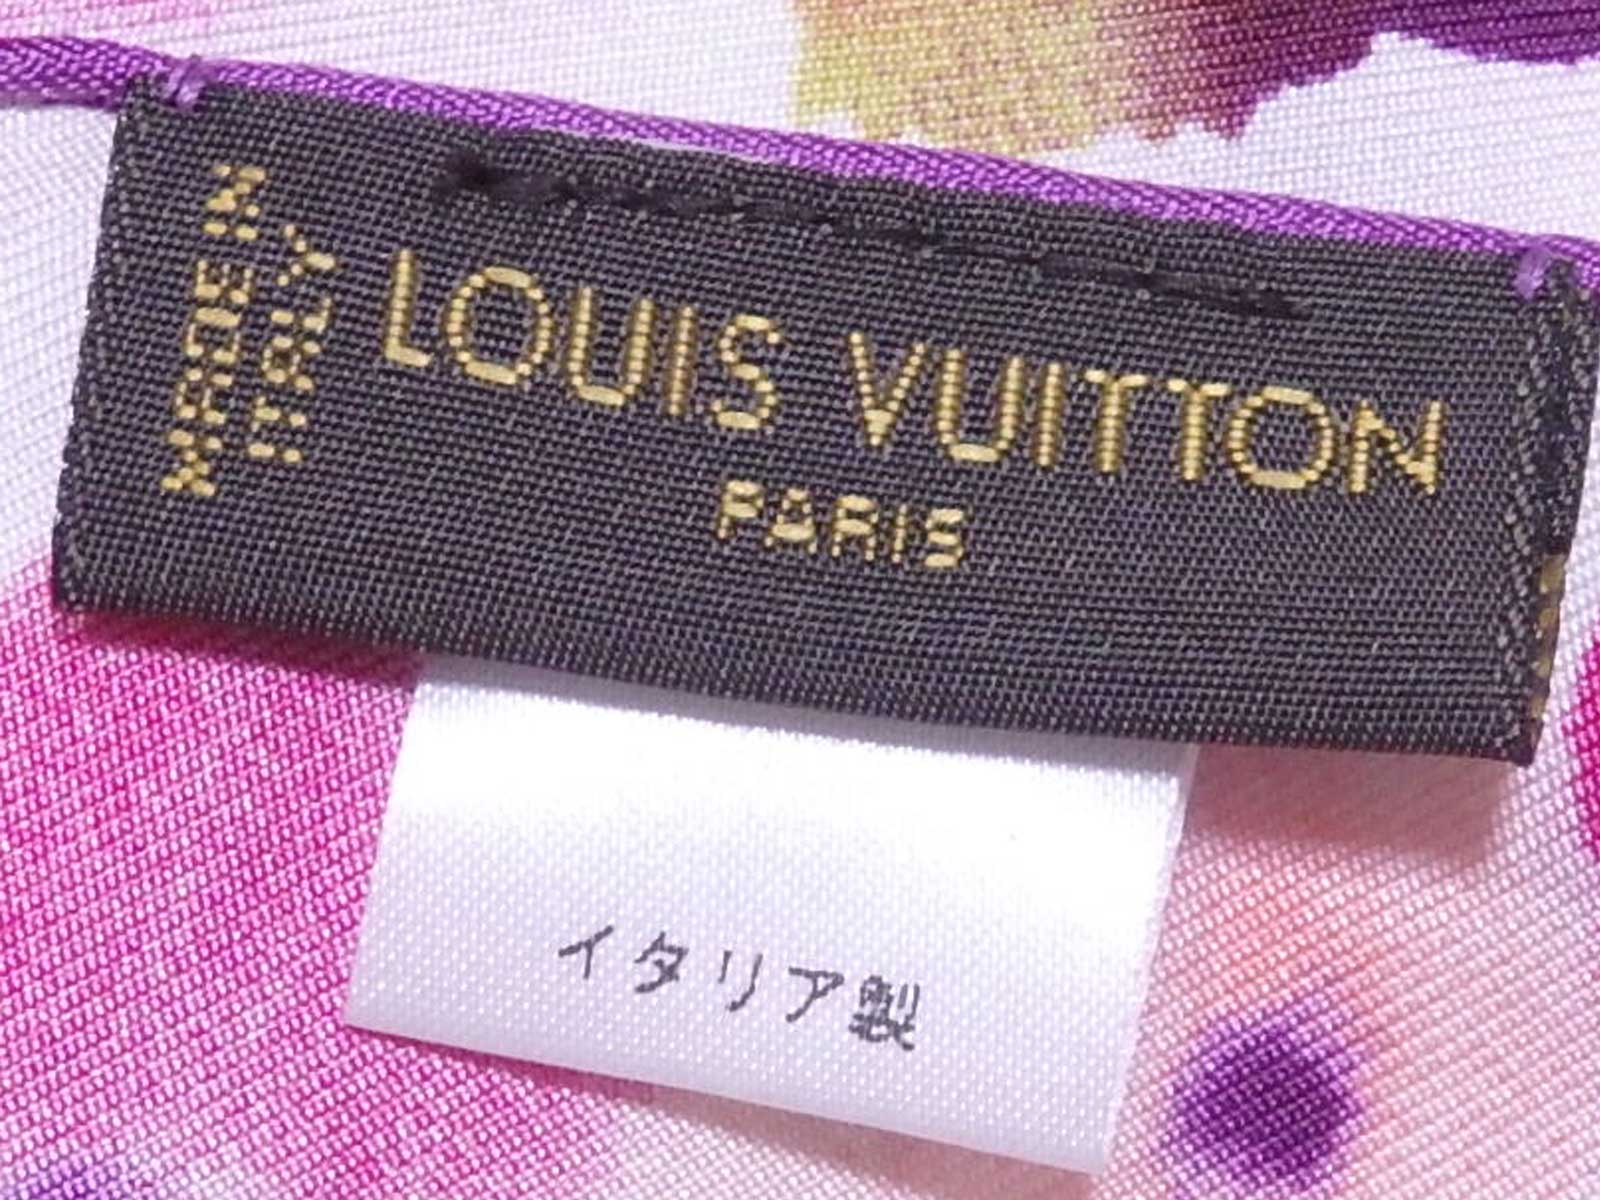 Auth Louis Vuitton Monogram Watercolor Scarf White/Multicolor 100% Silk  e50474f